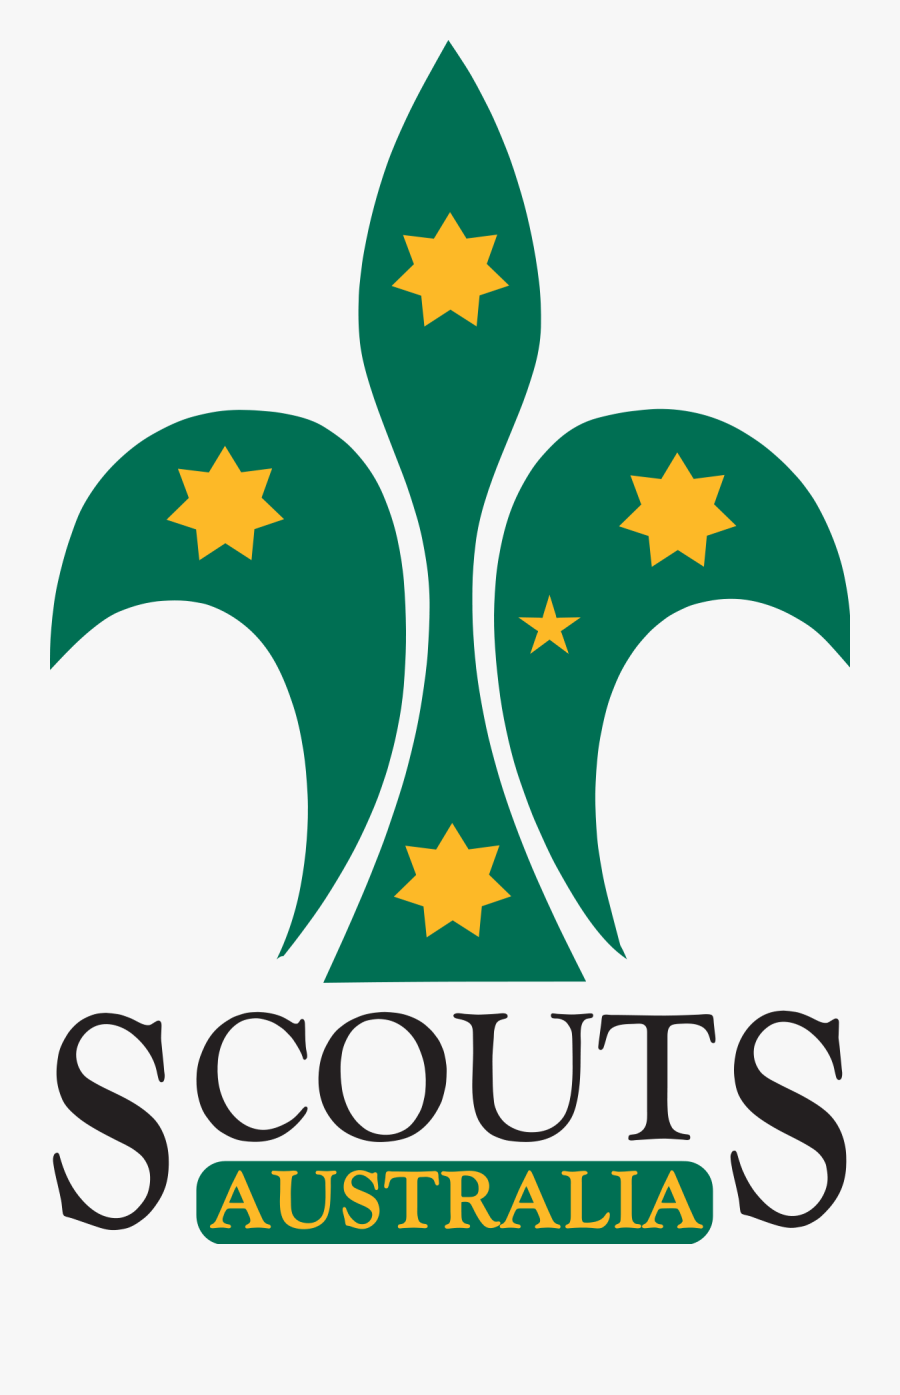 Scouts Australia Png - Scouts Australia Logo, Transparent Clipart